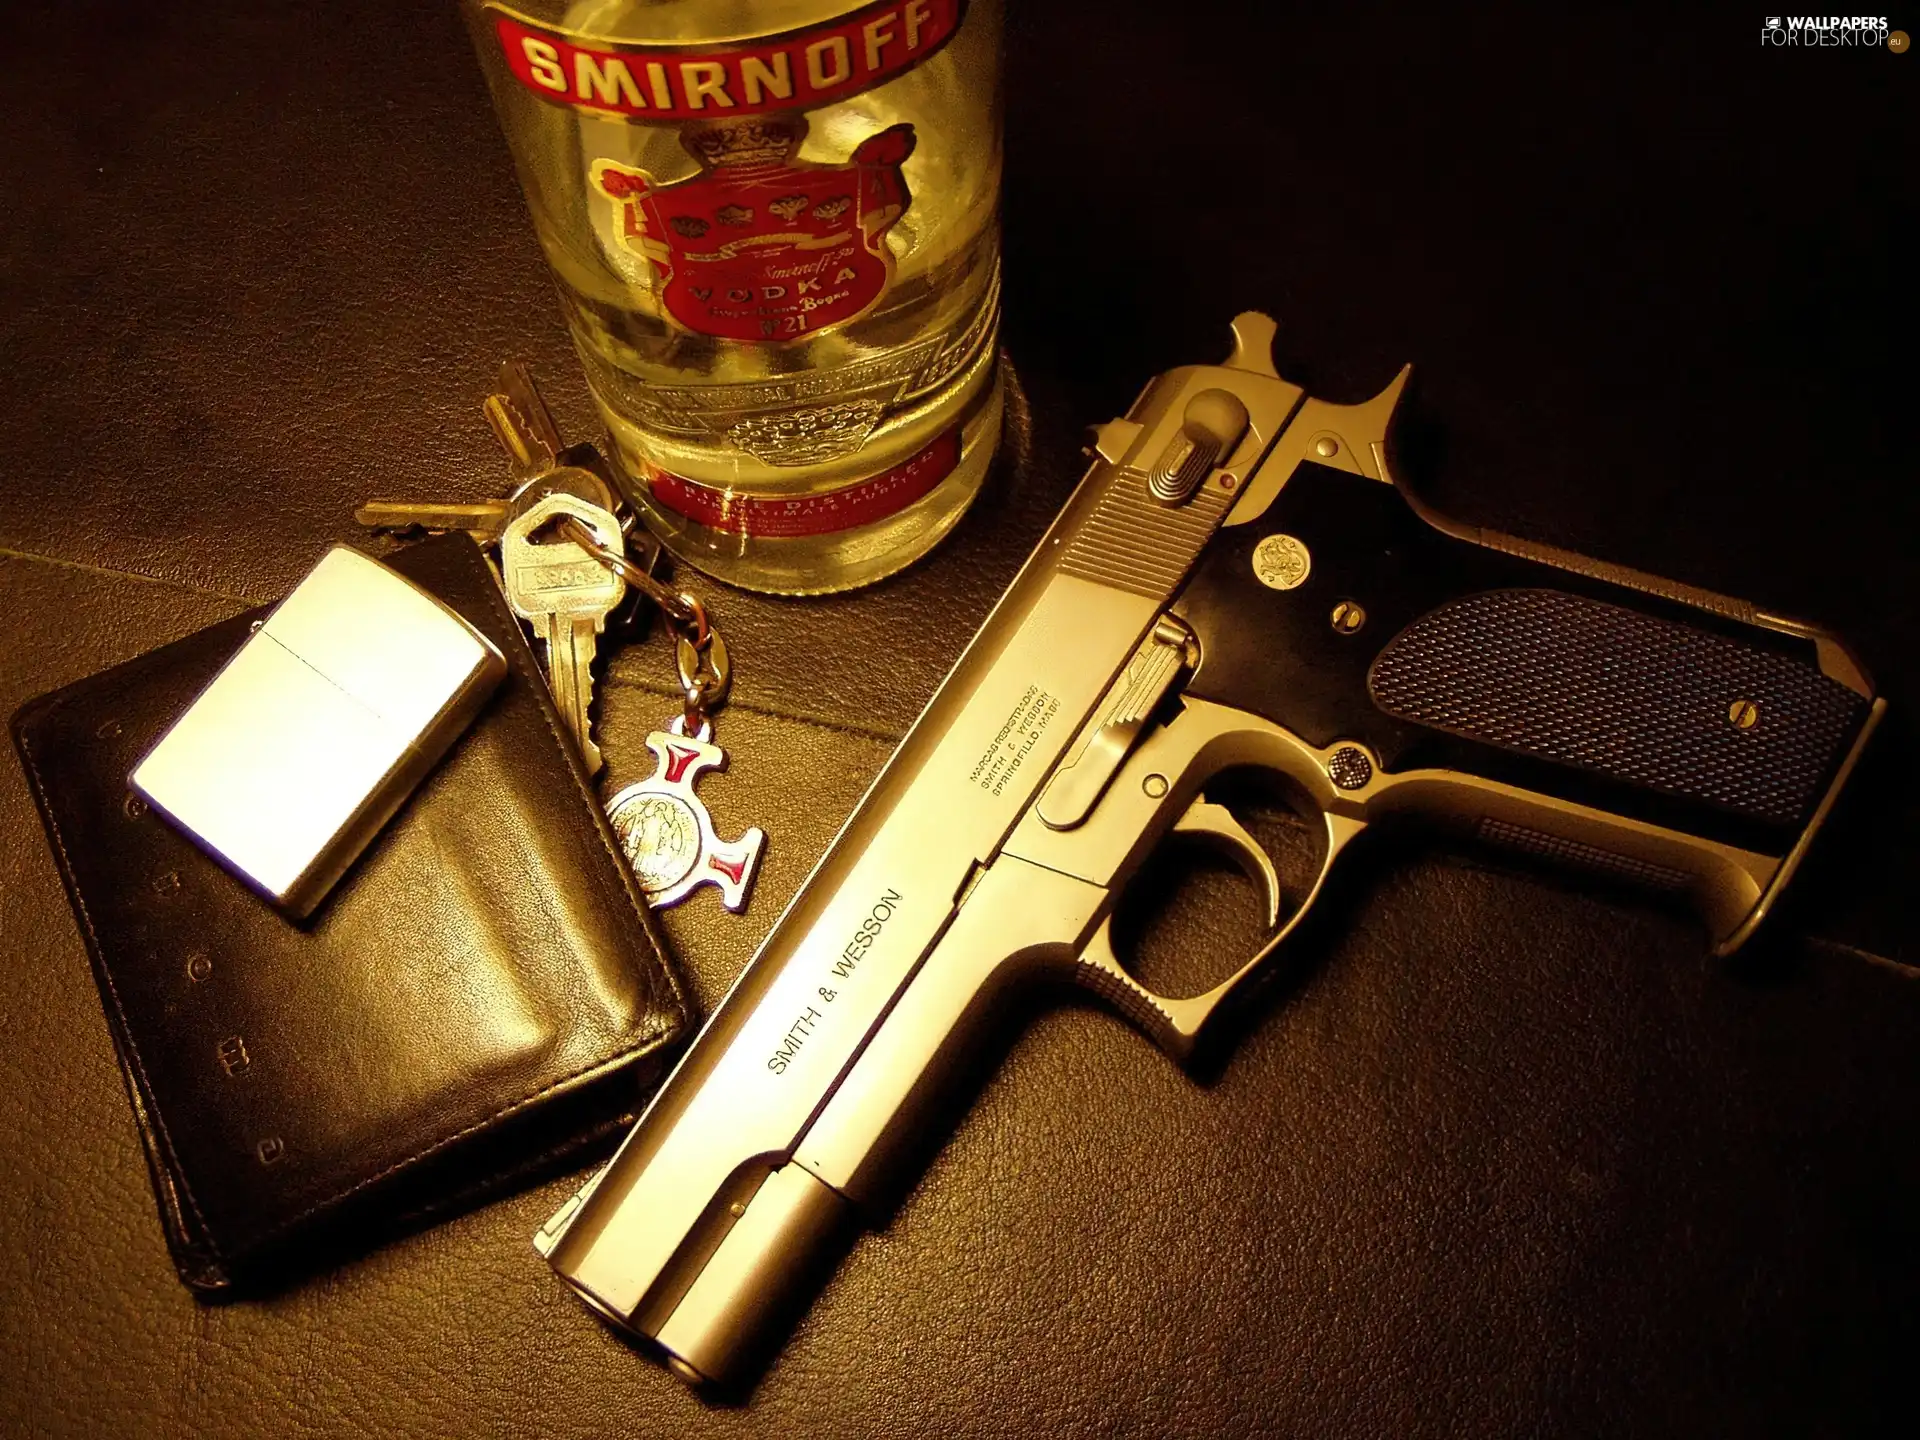 Gun, vodka, lighter, keys, wallet, Smirnoff